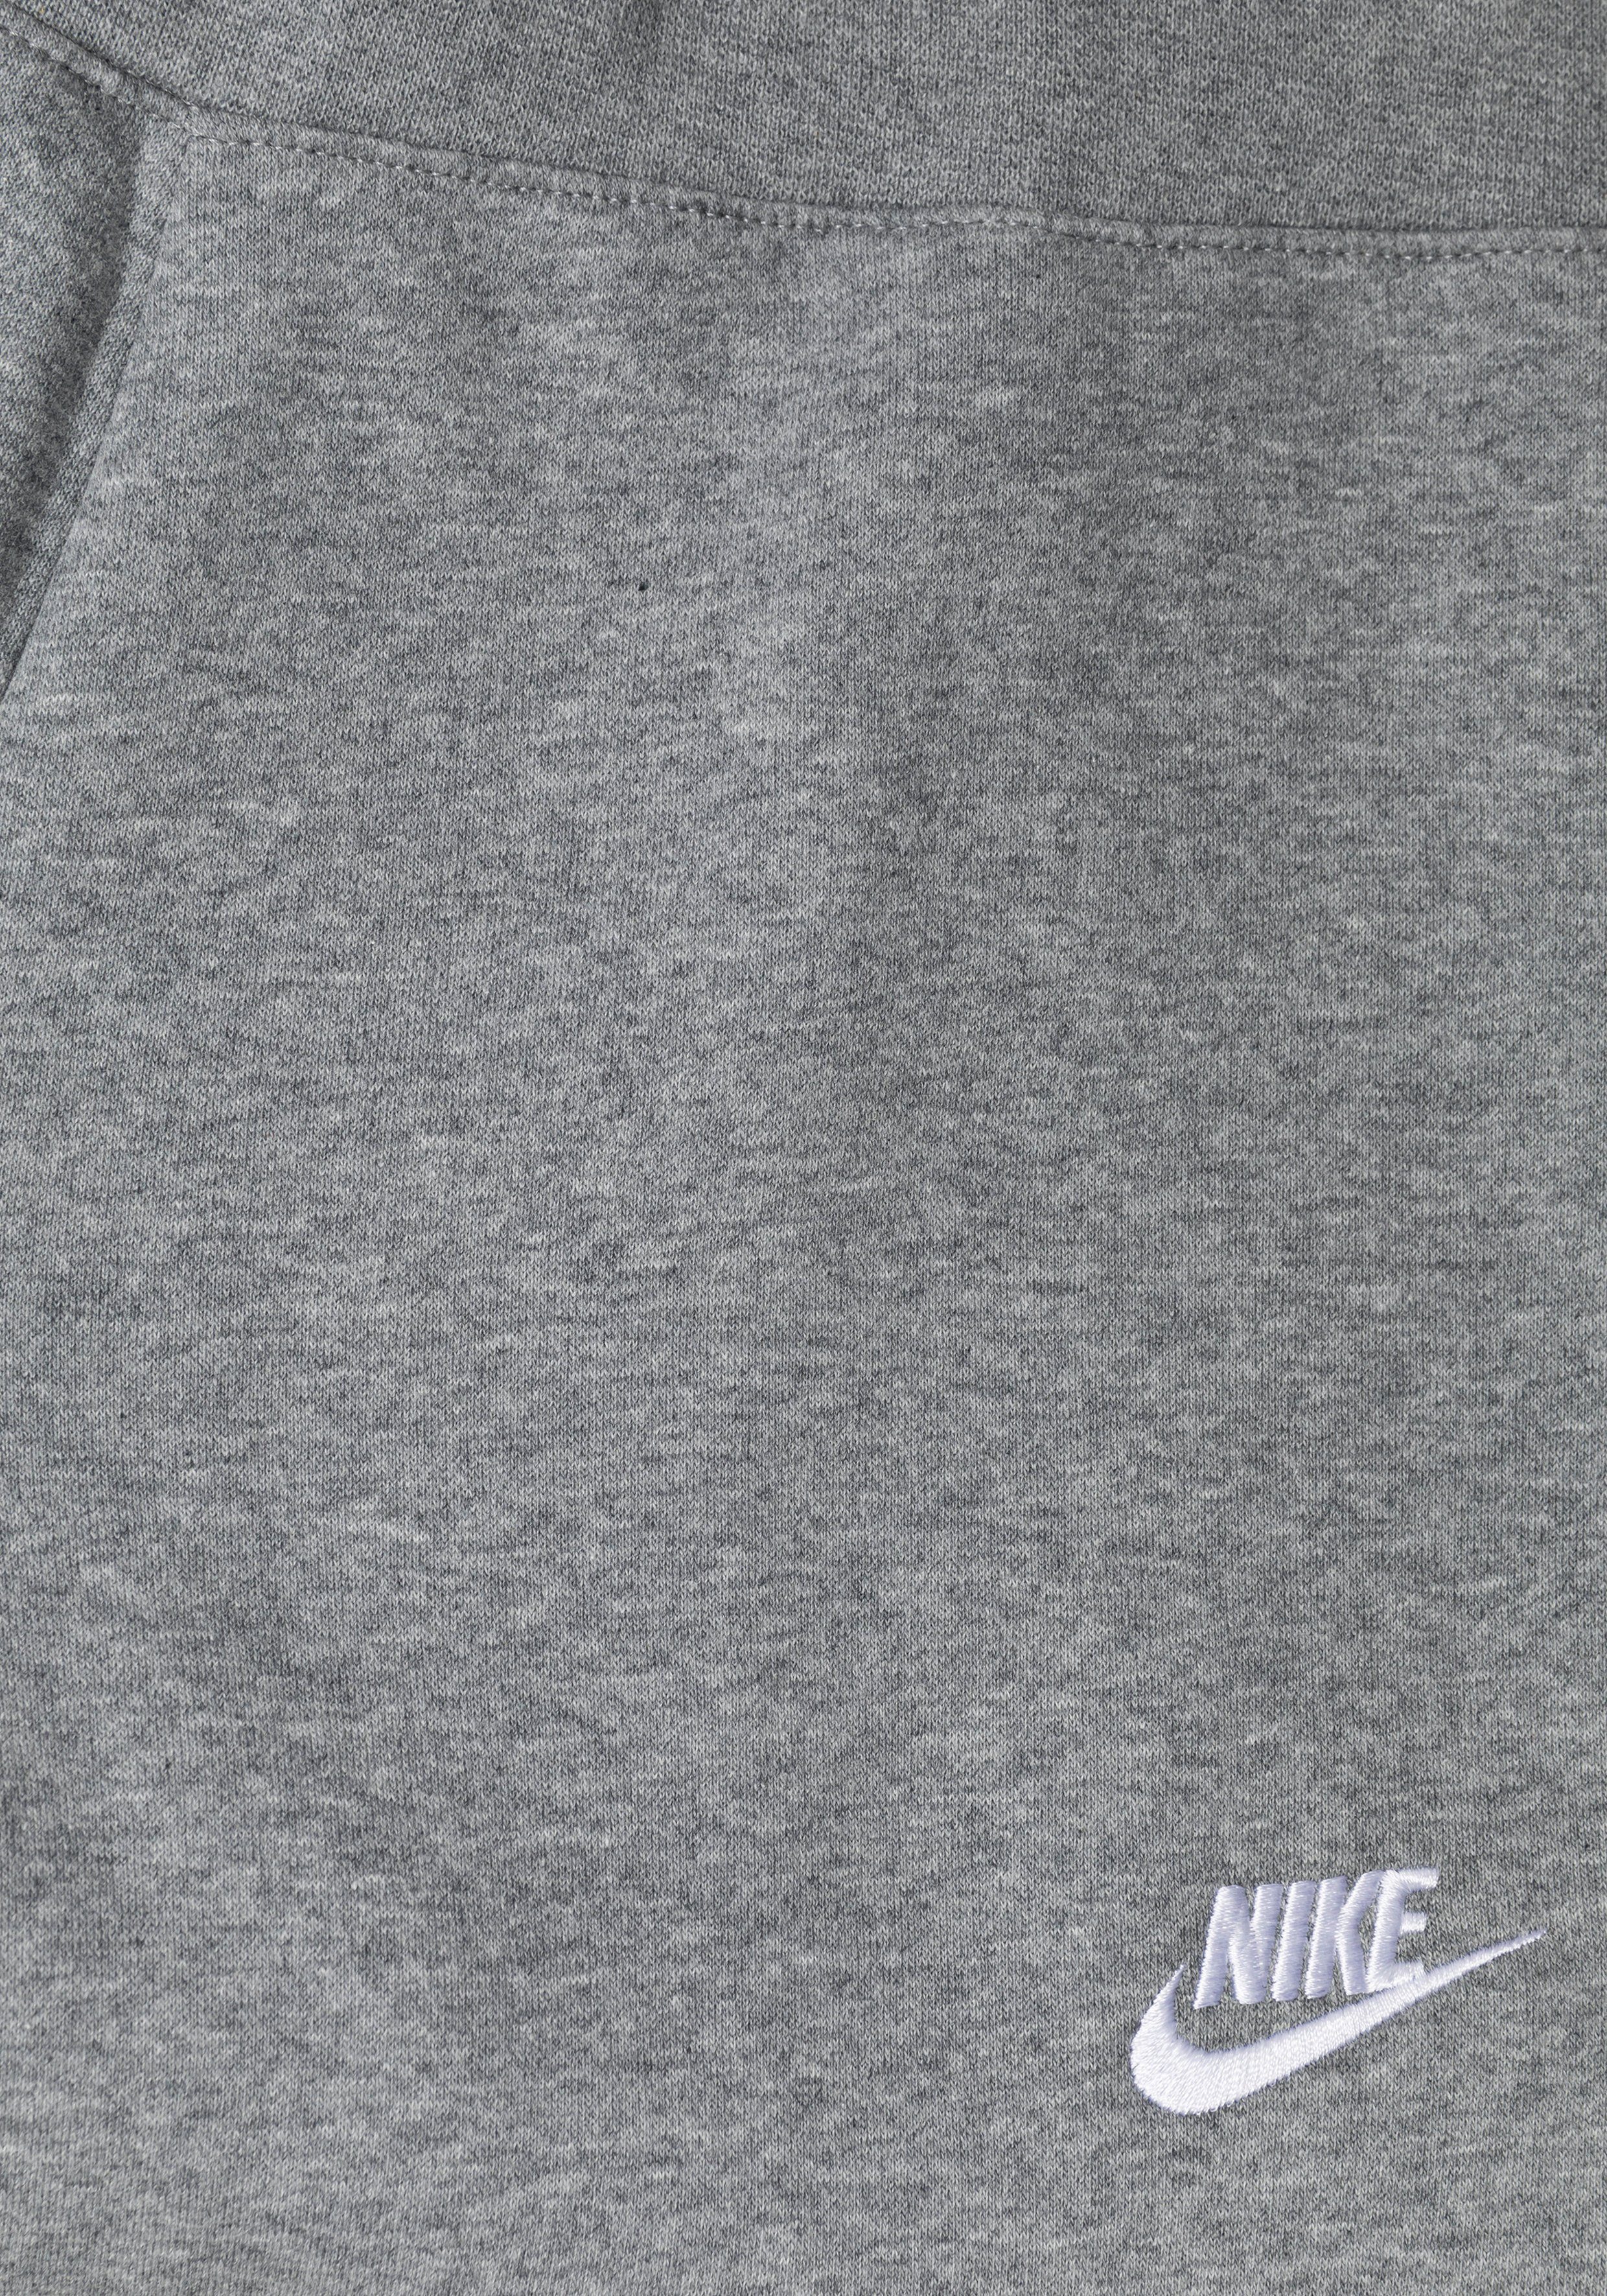 Nike Sportswear Jogginghose Club Kids' grau-meliert Fleece (Girls) Big Pants